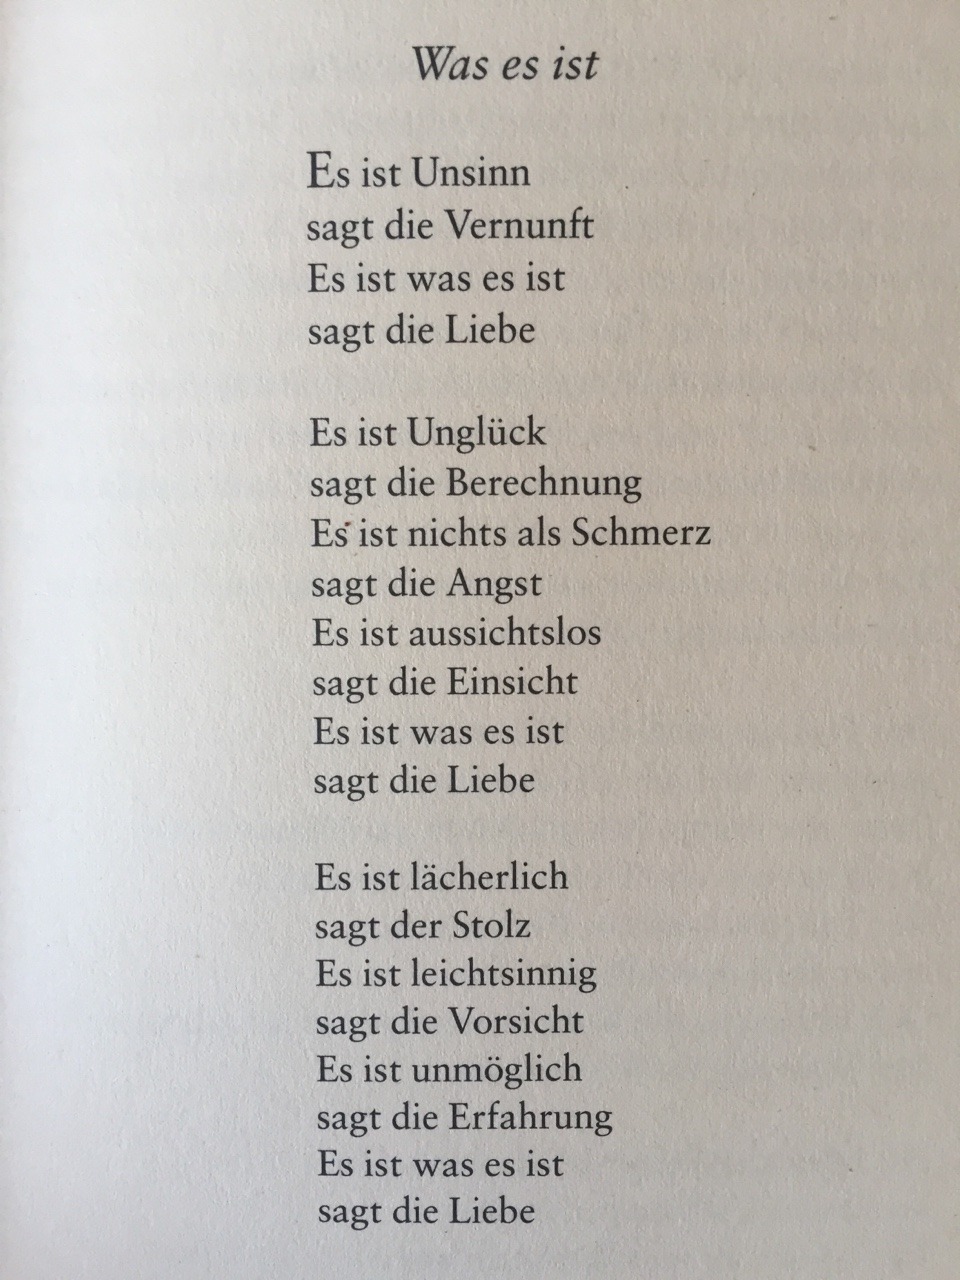 Deutsche Lyrik von damals und heute — gedichteausderwelt: “Was es ist